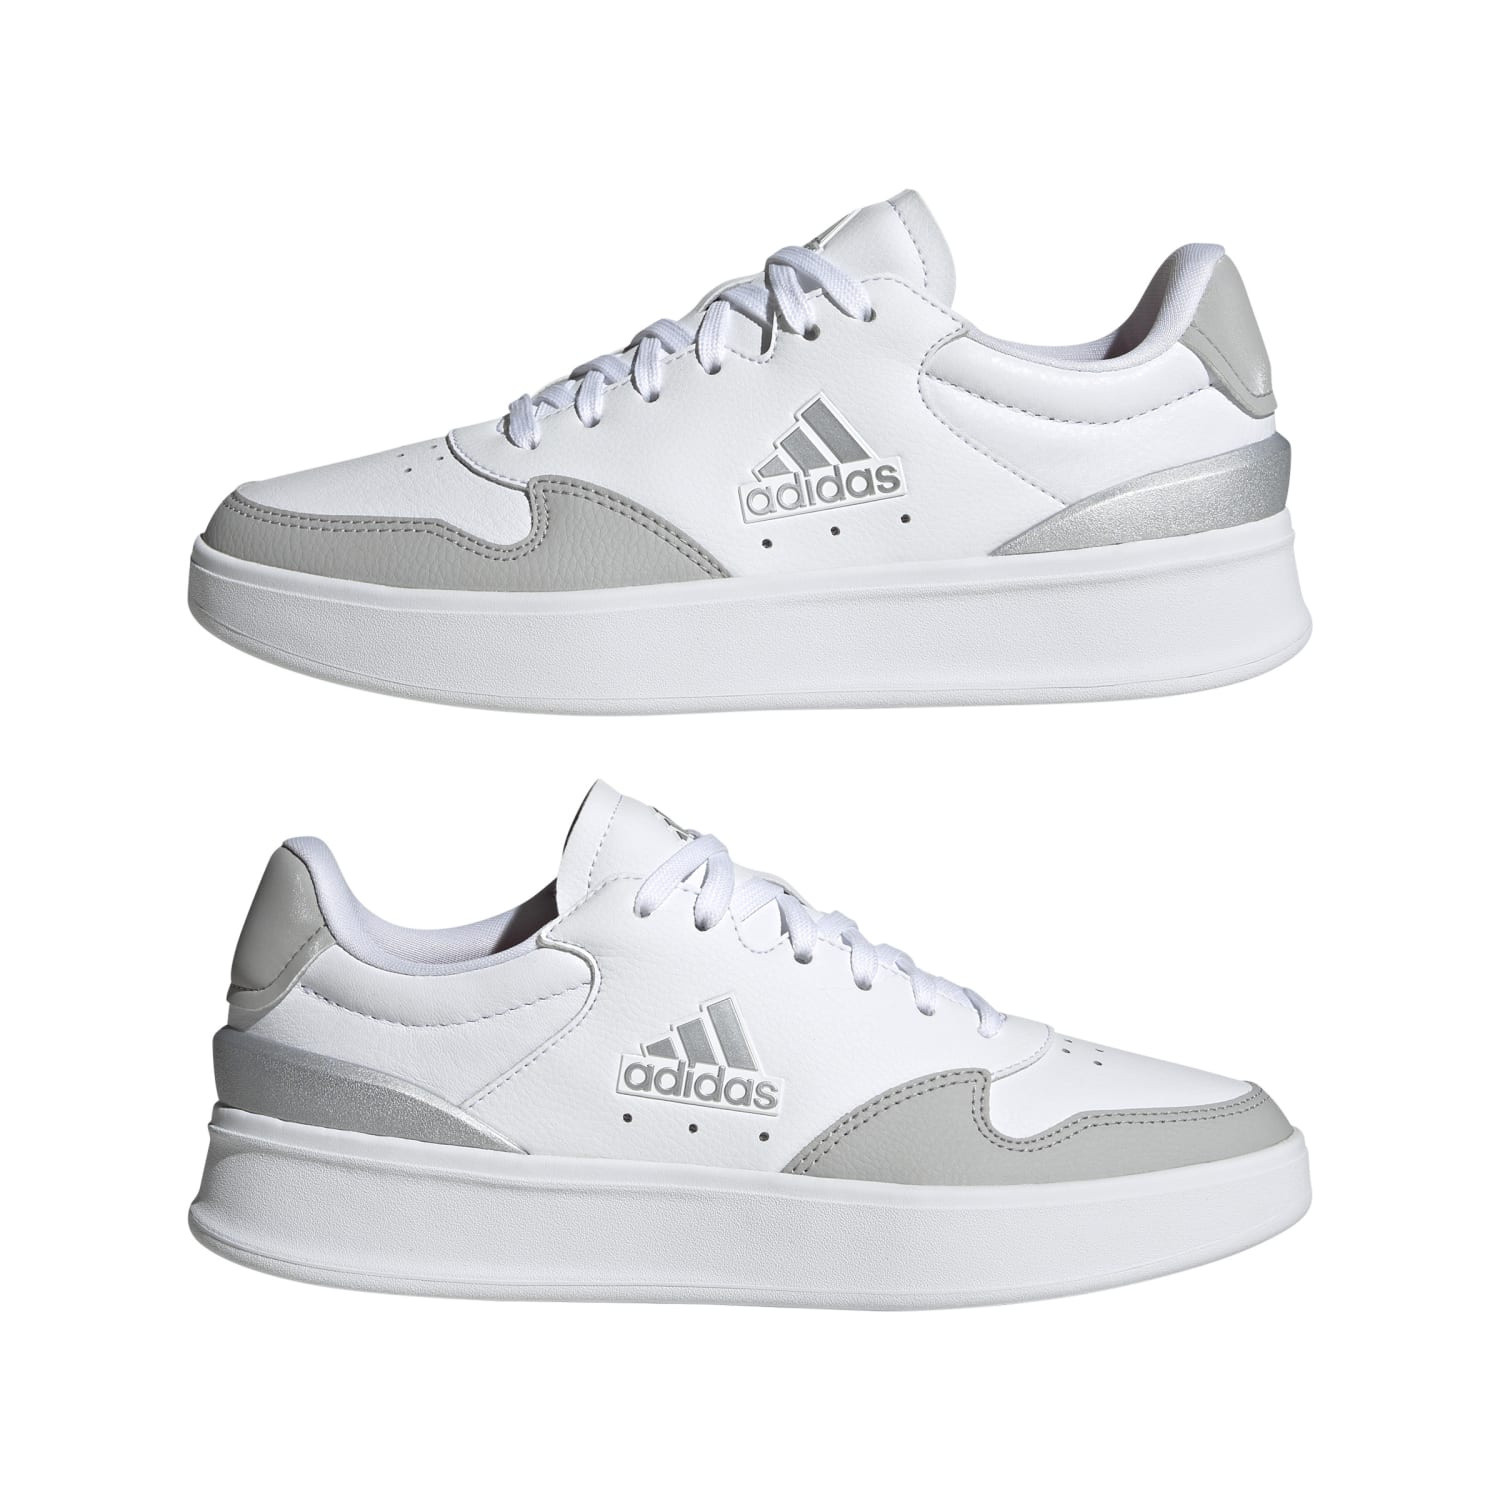 Adidas - Kantana shoes, White, large image number 5